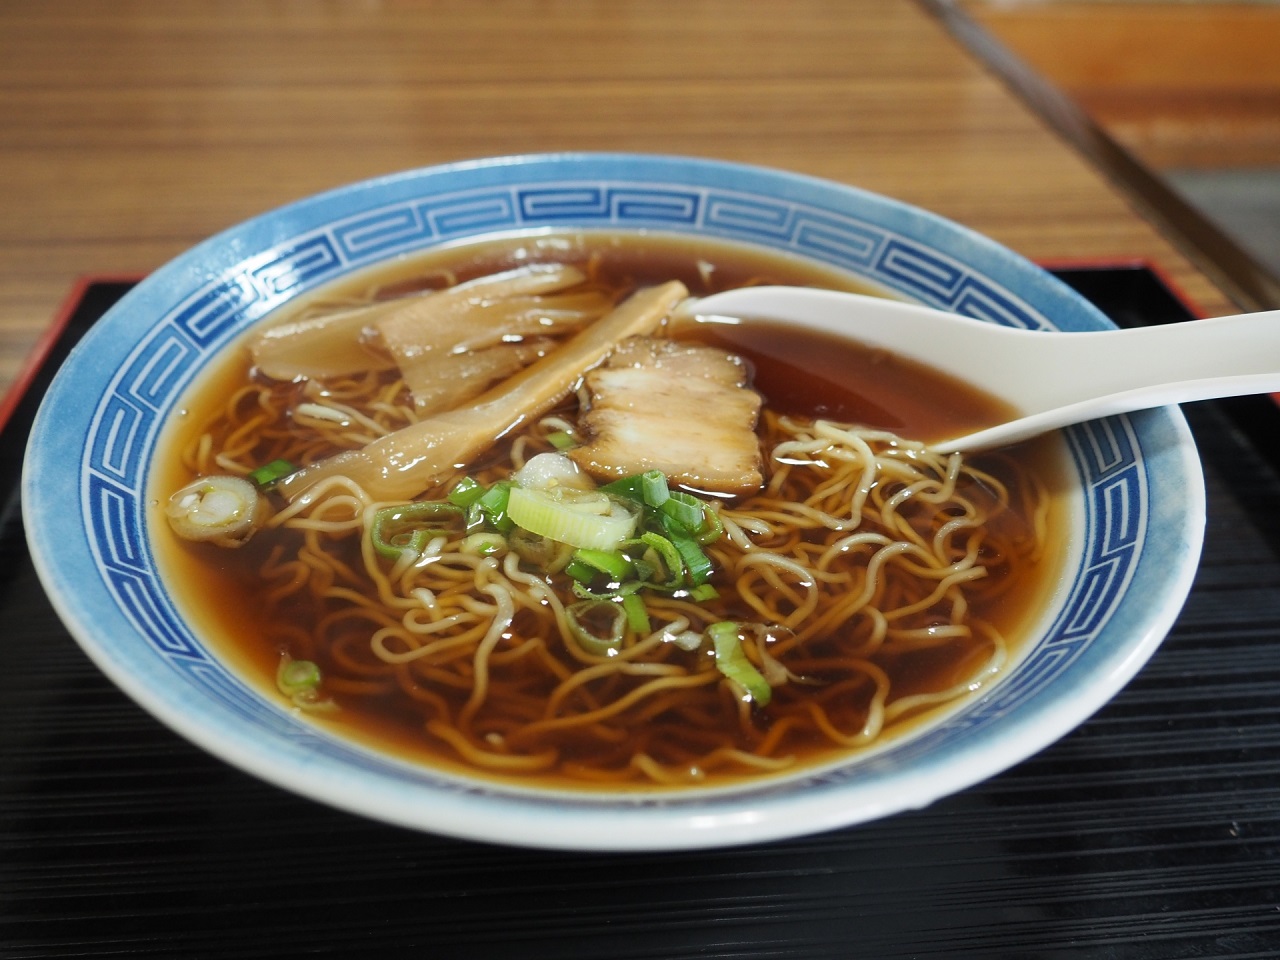 อาหารท้องถิ่น จ.กิฟุ - ทาคายาม่าราเมน (Takayama Ramen)